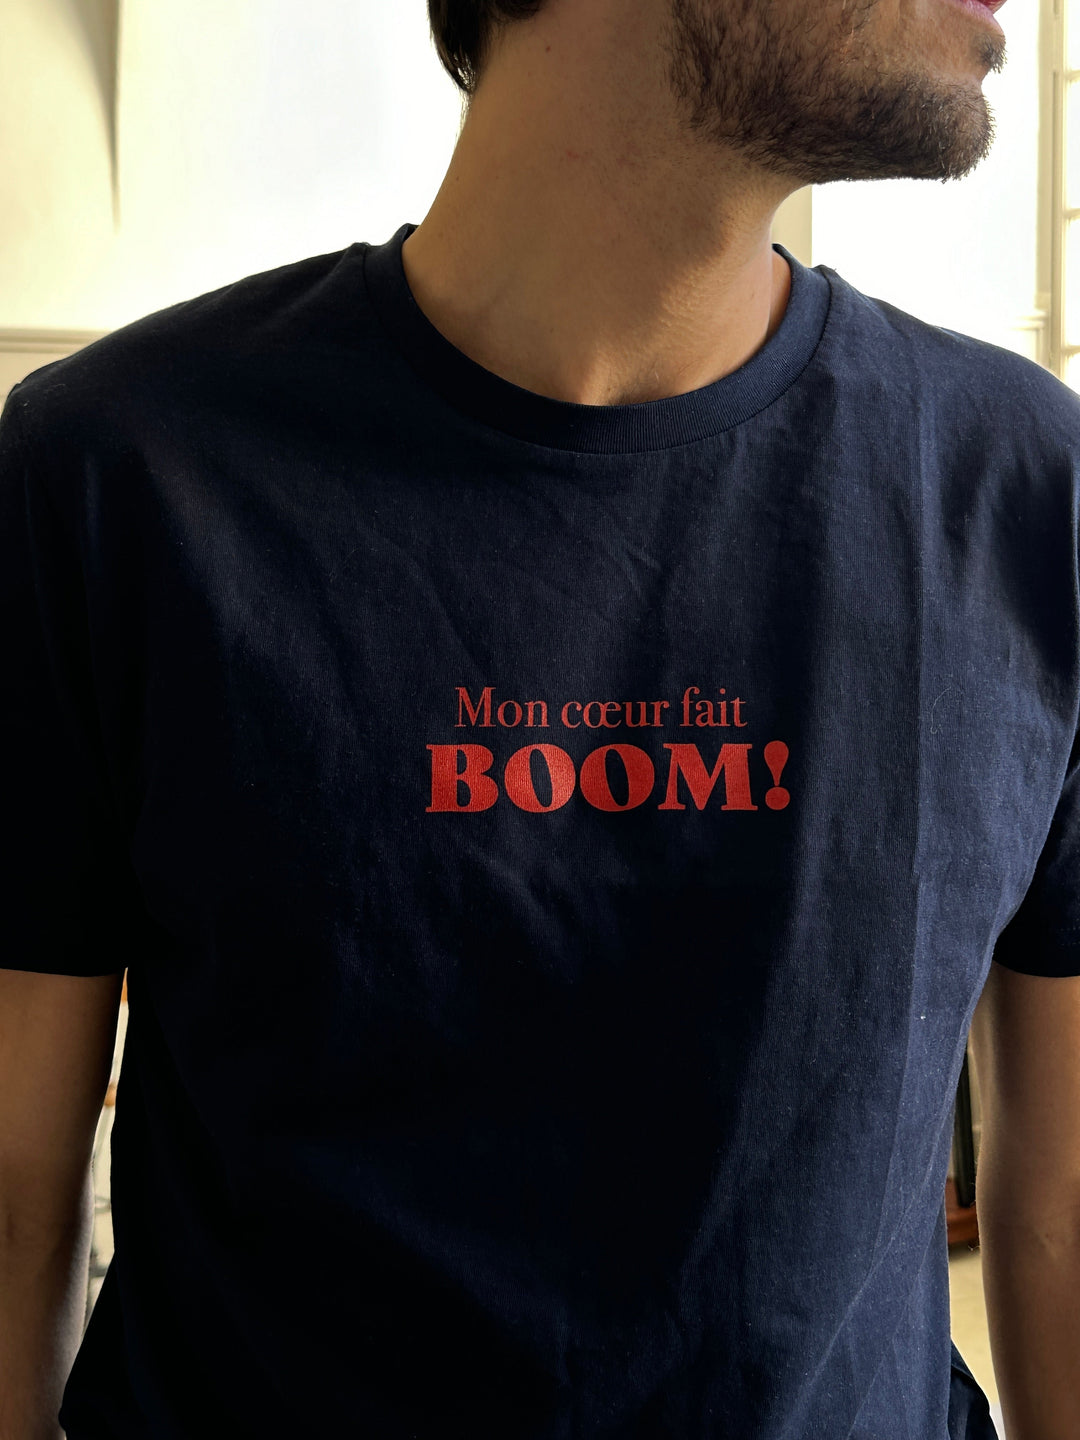 Mon coeur fait BOOM! unisex cotton t-shirt [Color options available] - Les Petits Basics